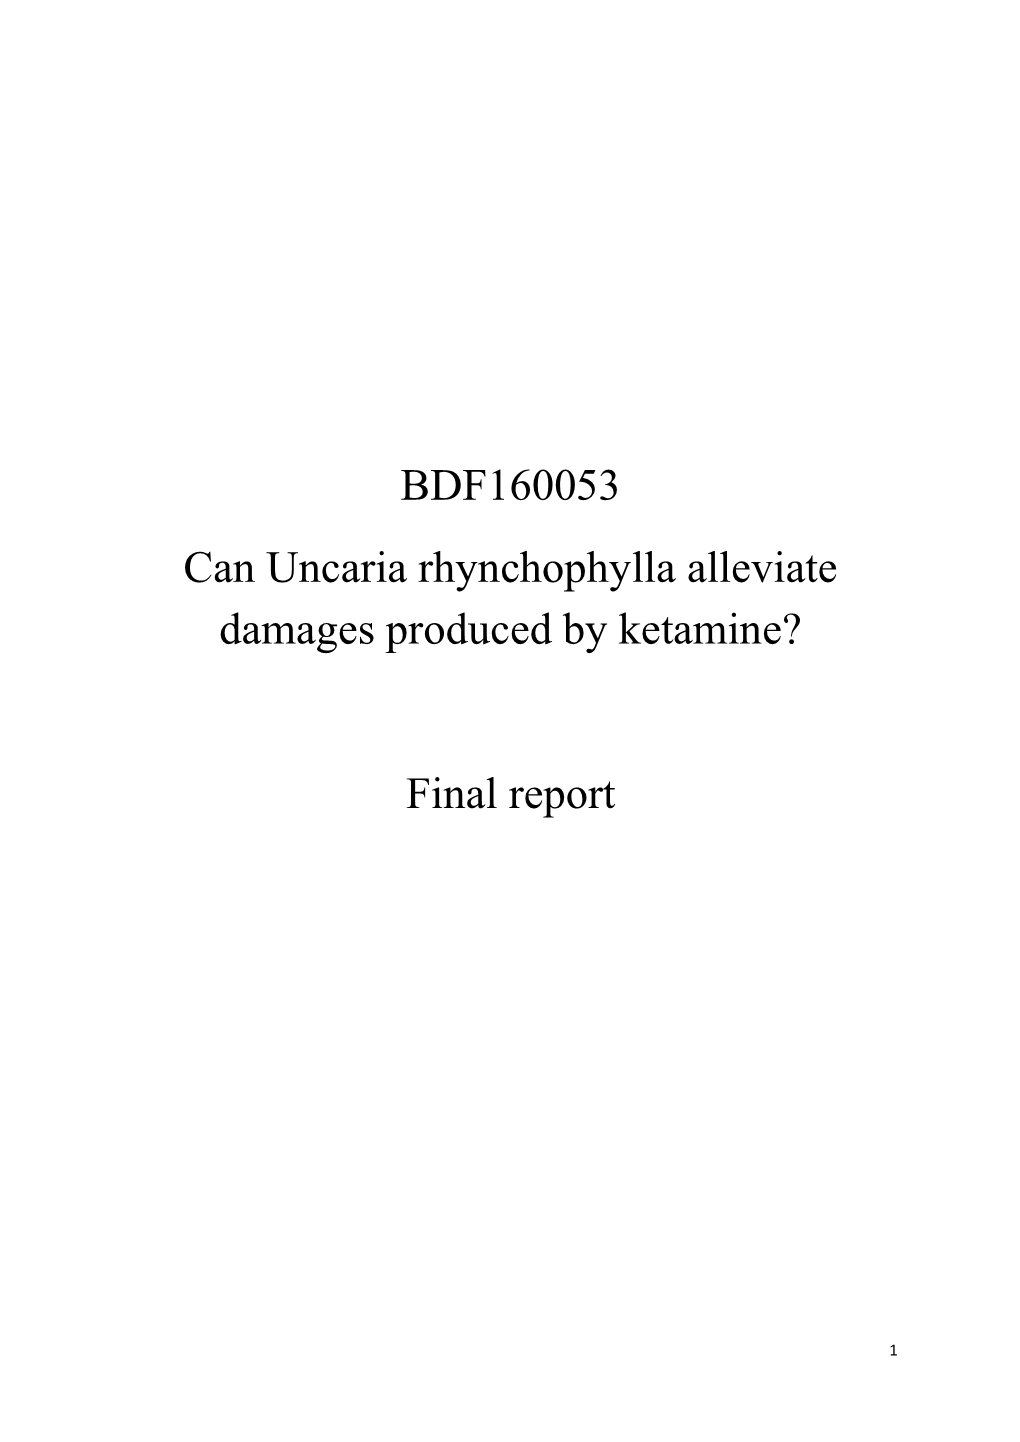 BDF160053 Can Uncaria Rhynchophylla Alleviate Damages Produced by Ketamine? Final Report